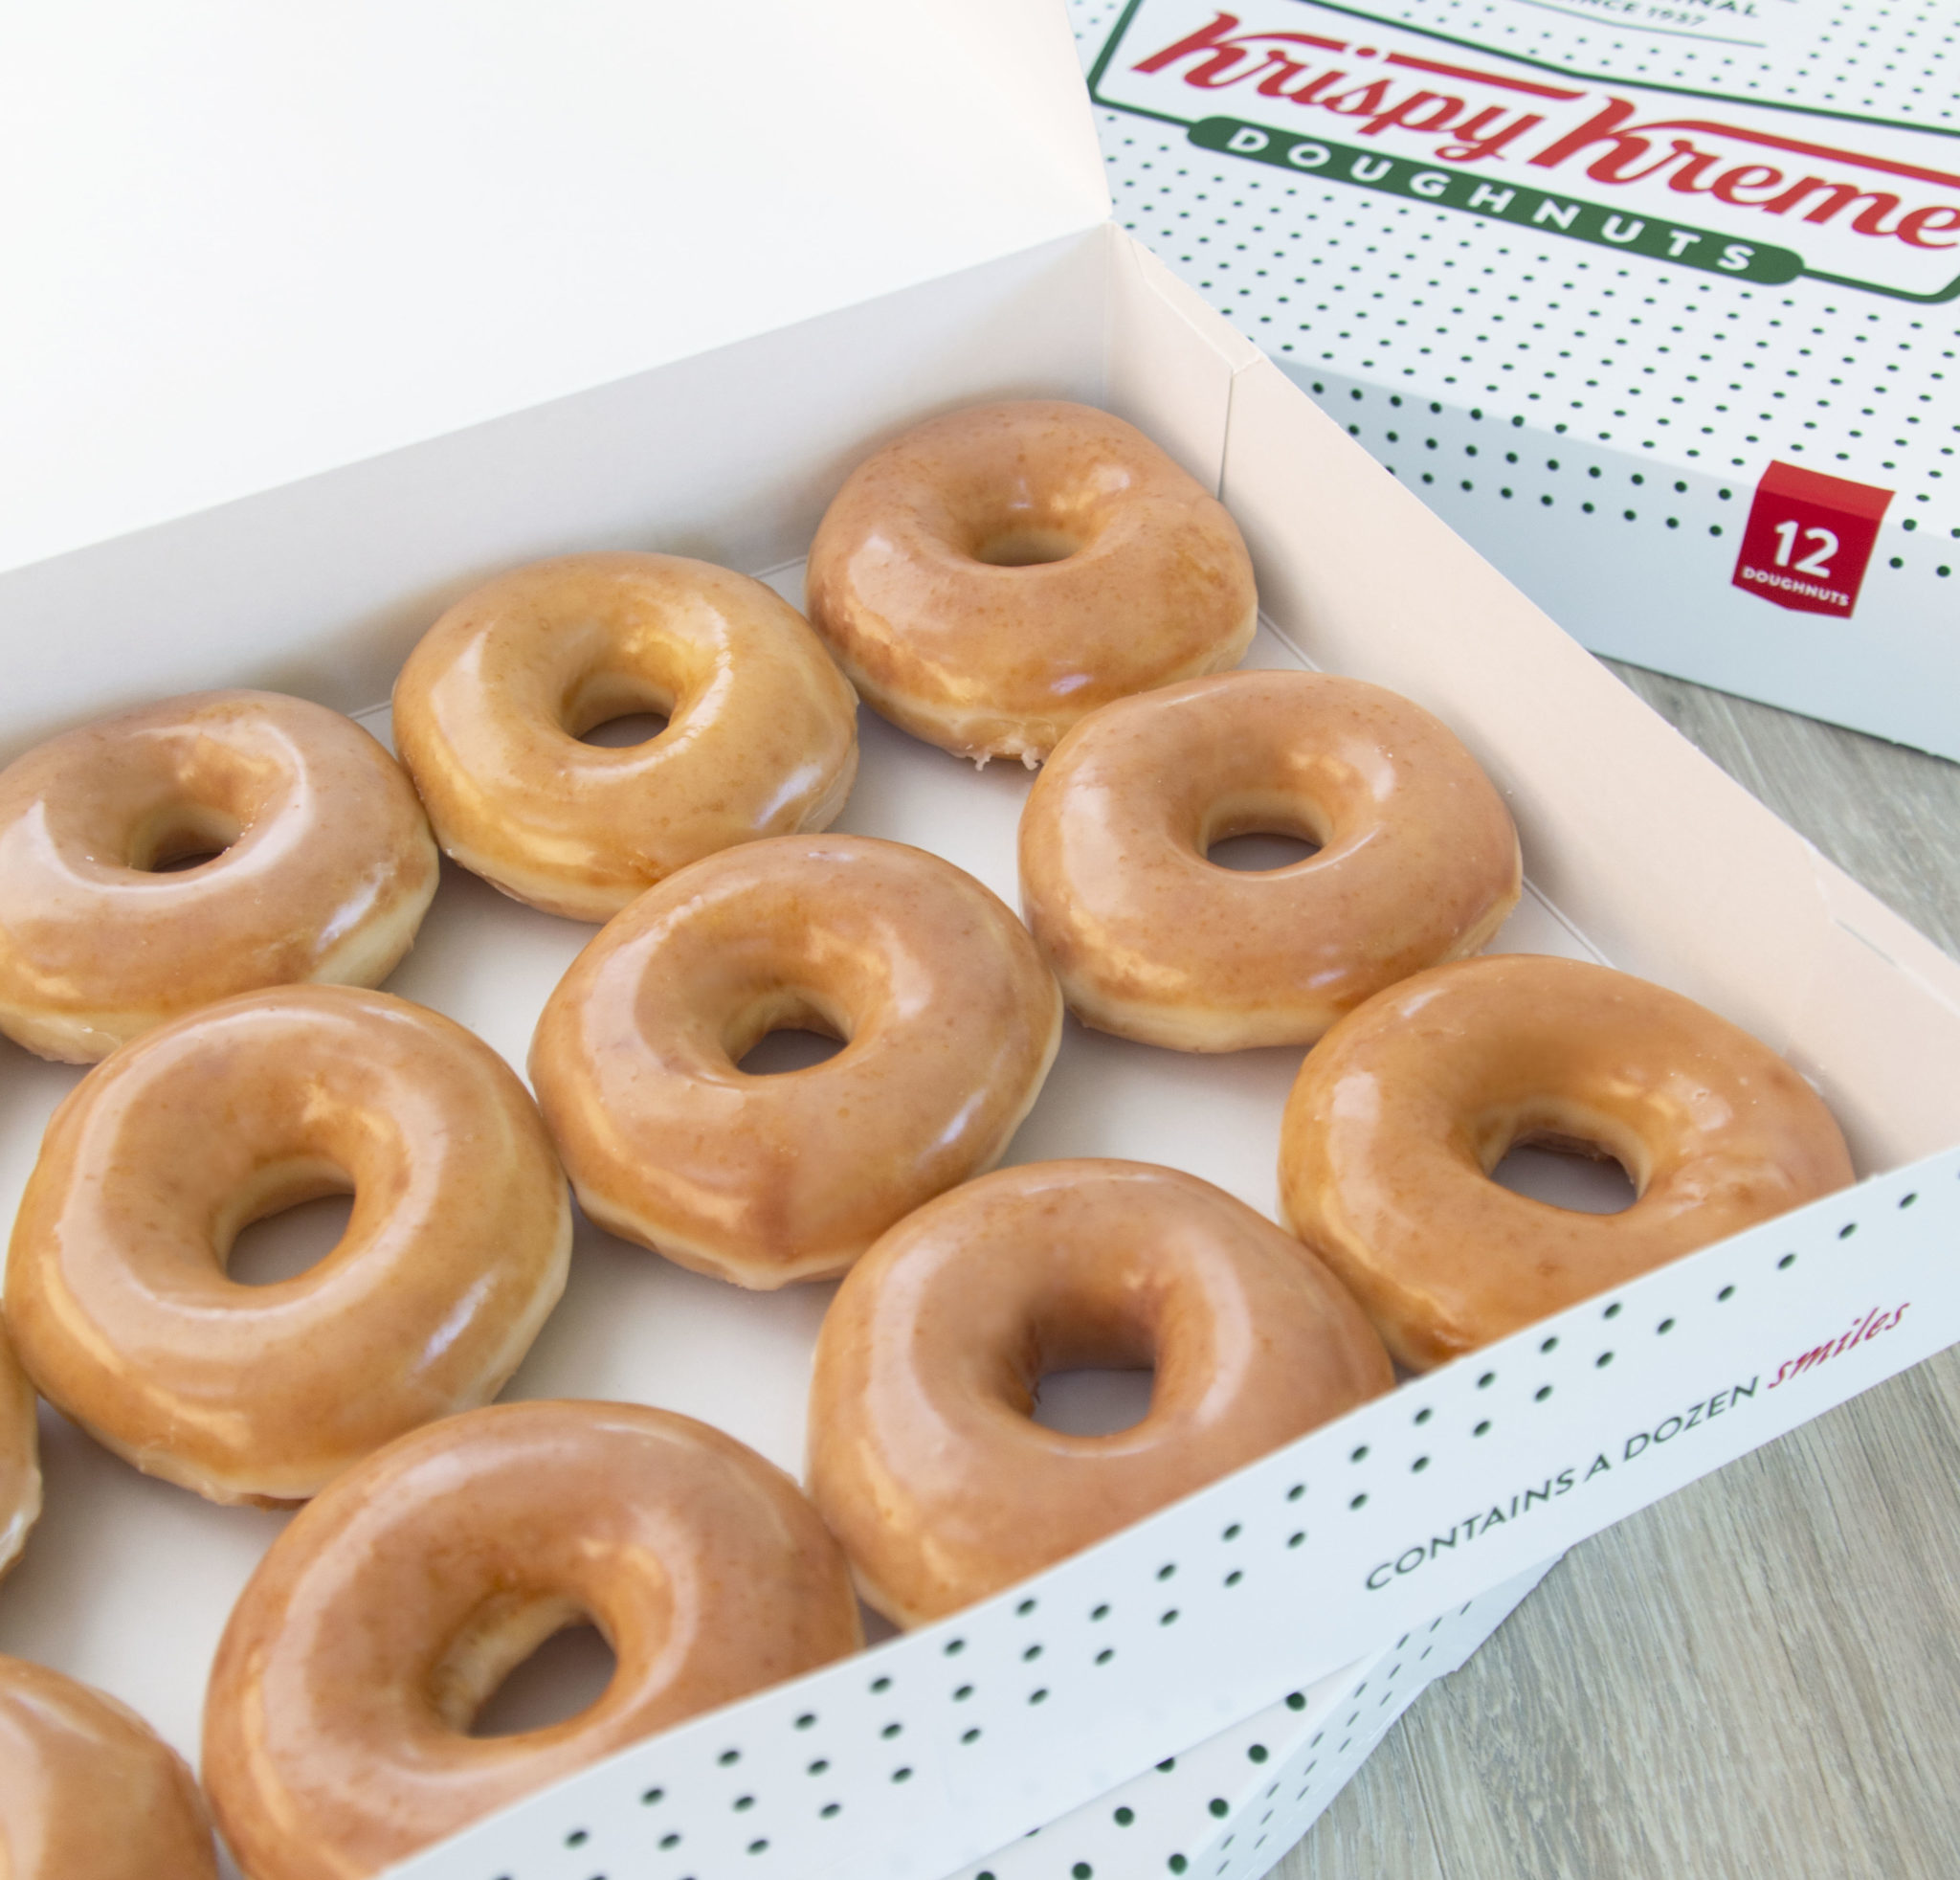 Krispy Kreme Digital の数十件のレビュー: 募金活動の経験を共有する